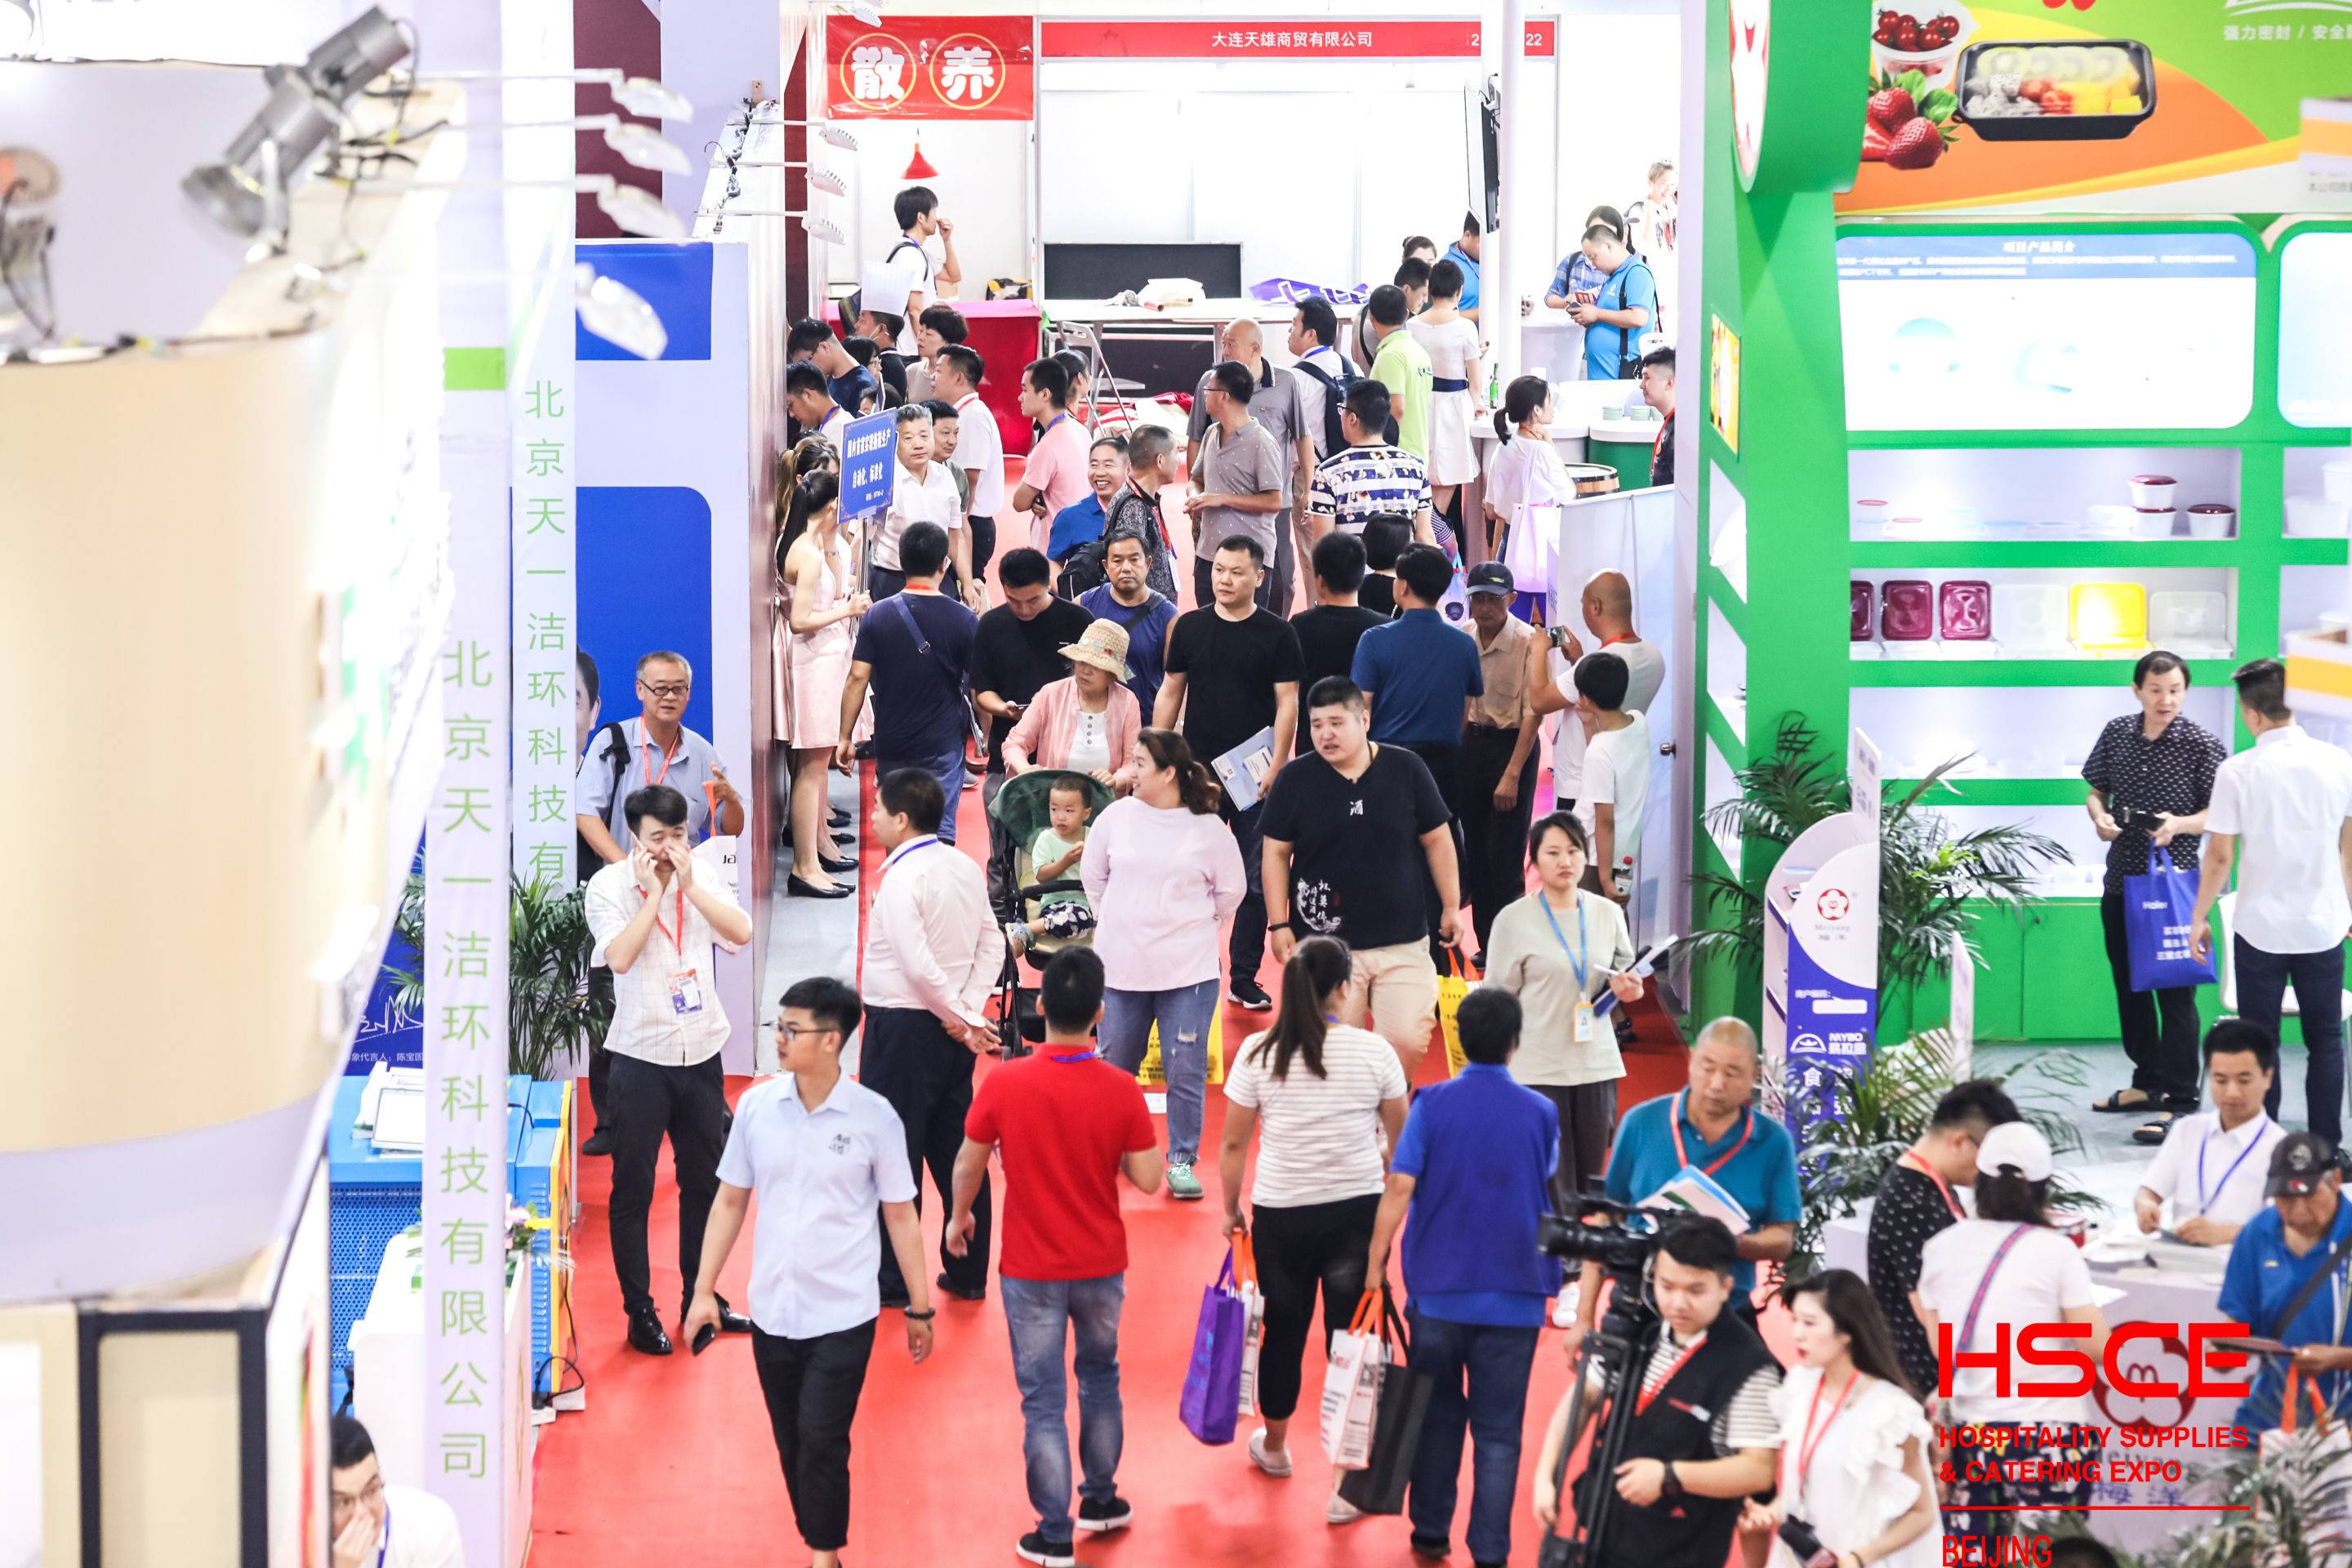 2021年上海福利礼品展会,上海食品展,上海健康食品博览会